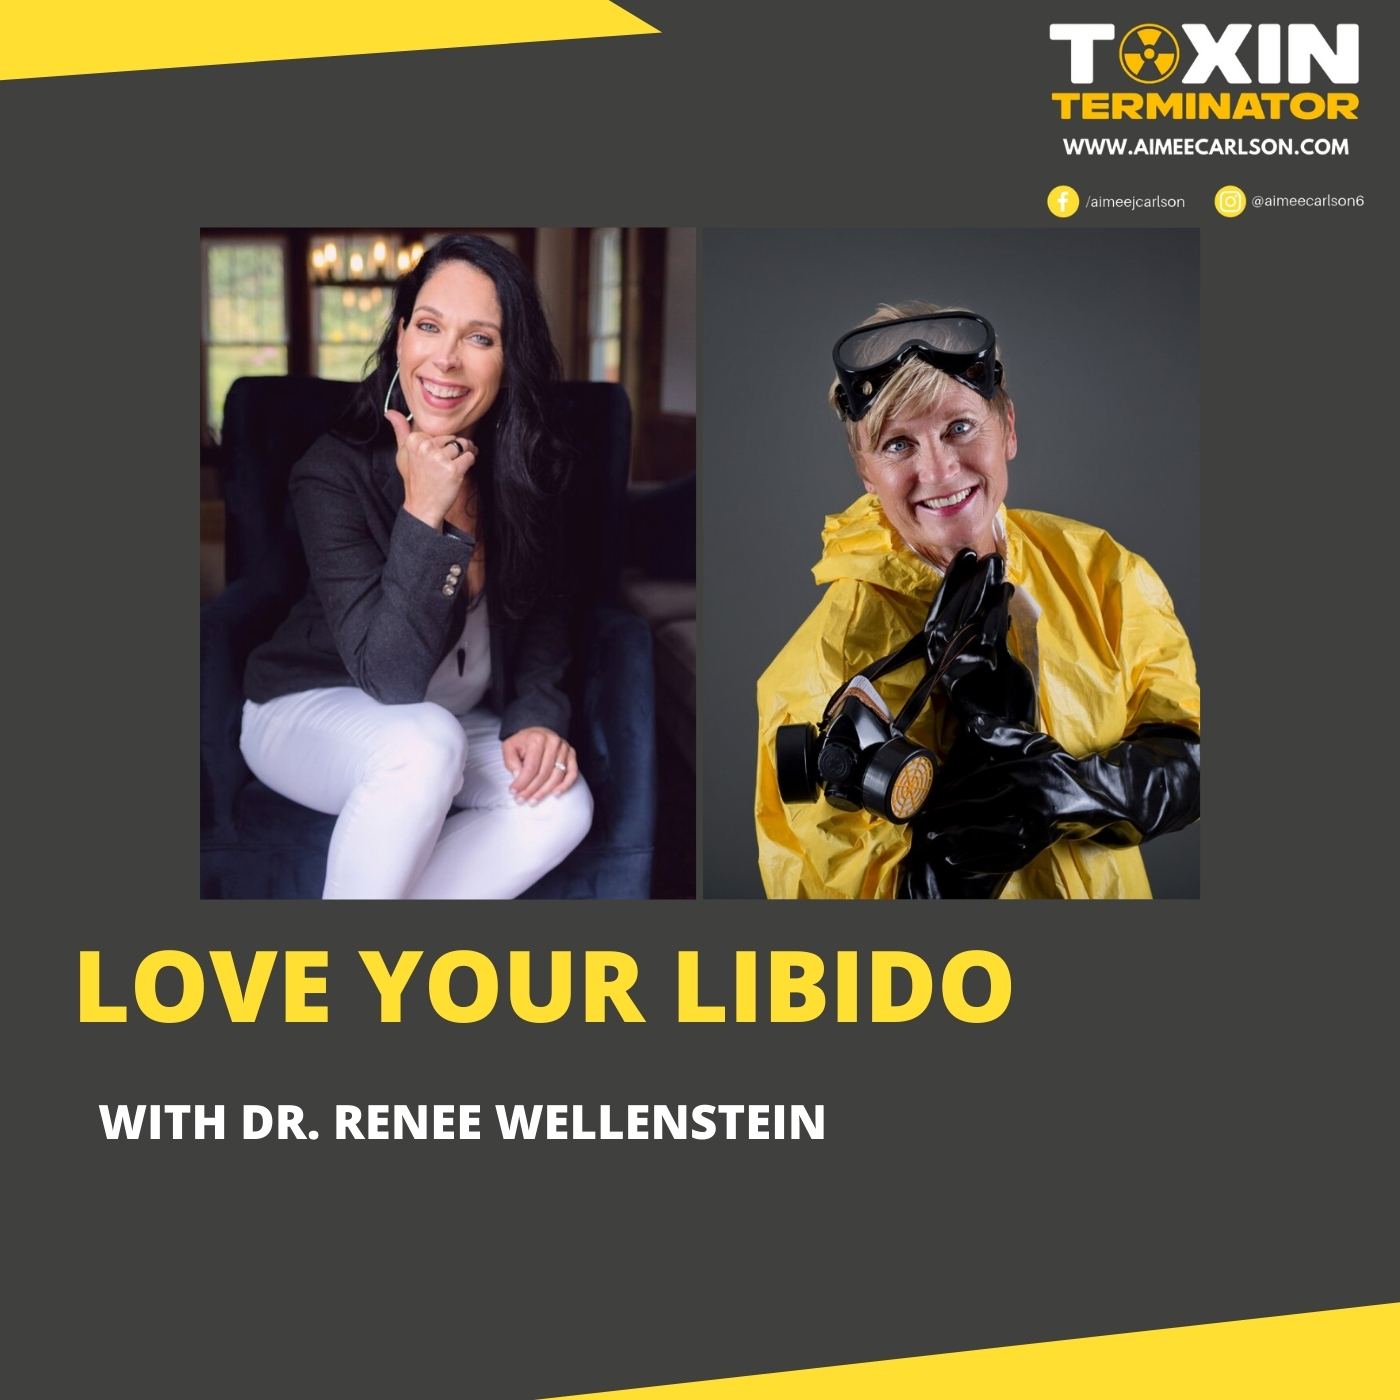 Love Your Libido with Dr. Renee Wellenstein